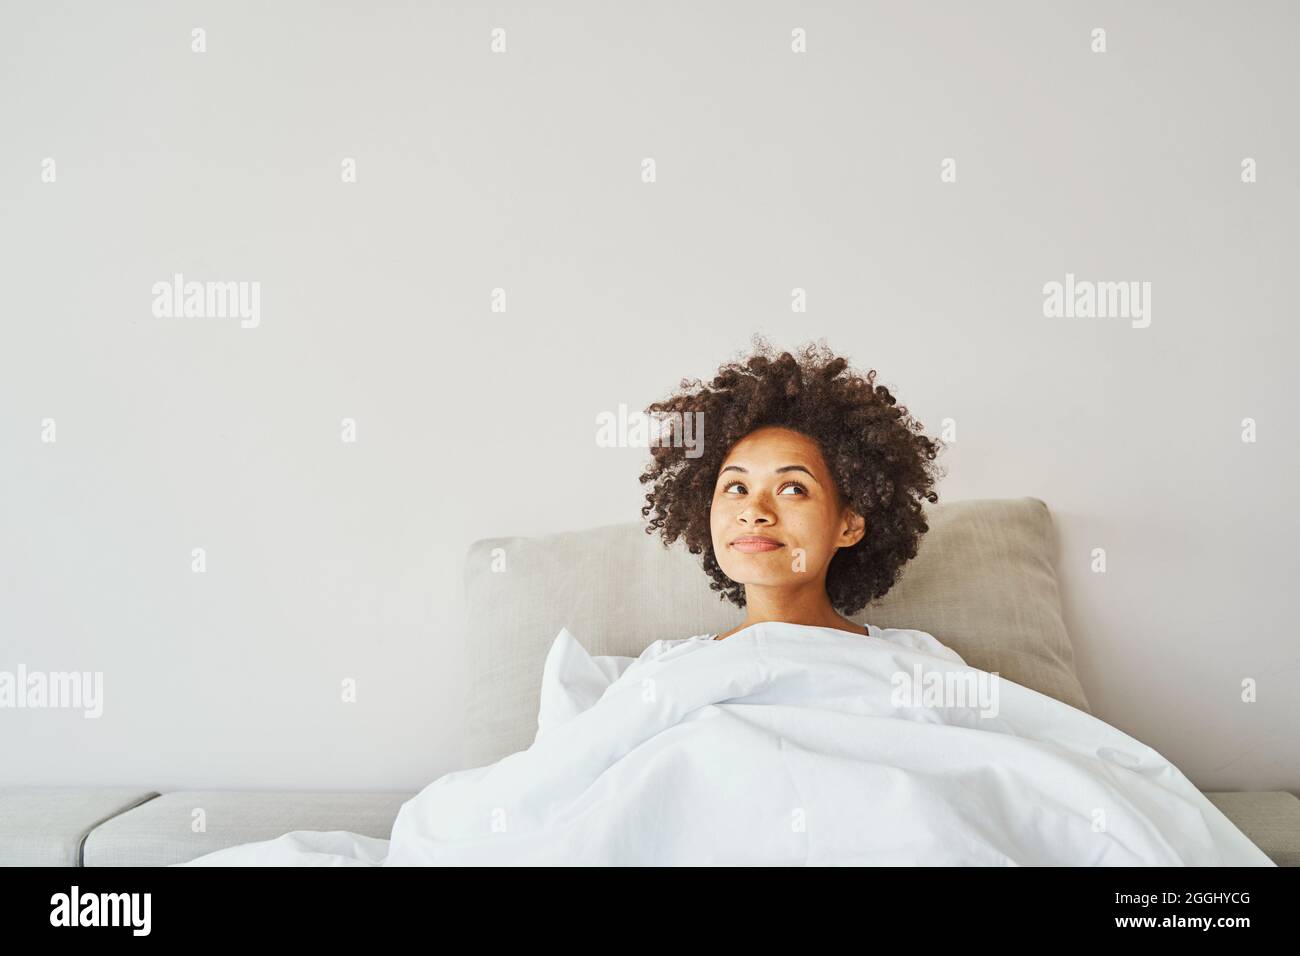 Porträt einer verträumten, zufriedenen afroamerikanischen Frau mit dunklem lockigen Haar, das im Bett liegt Stockfoto